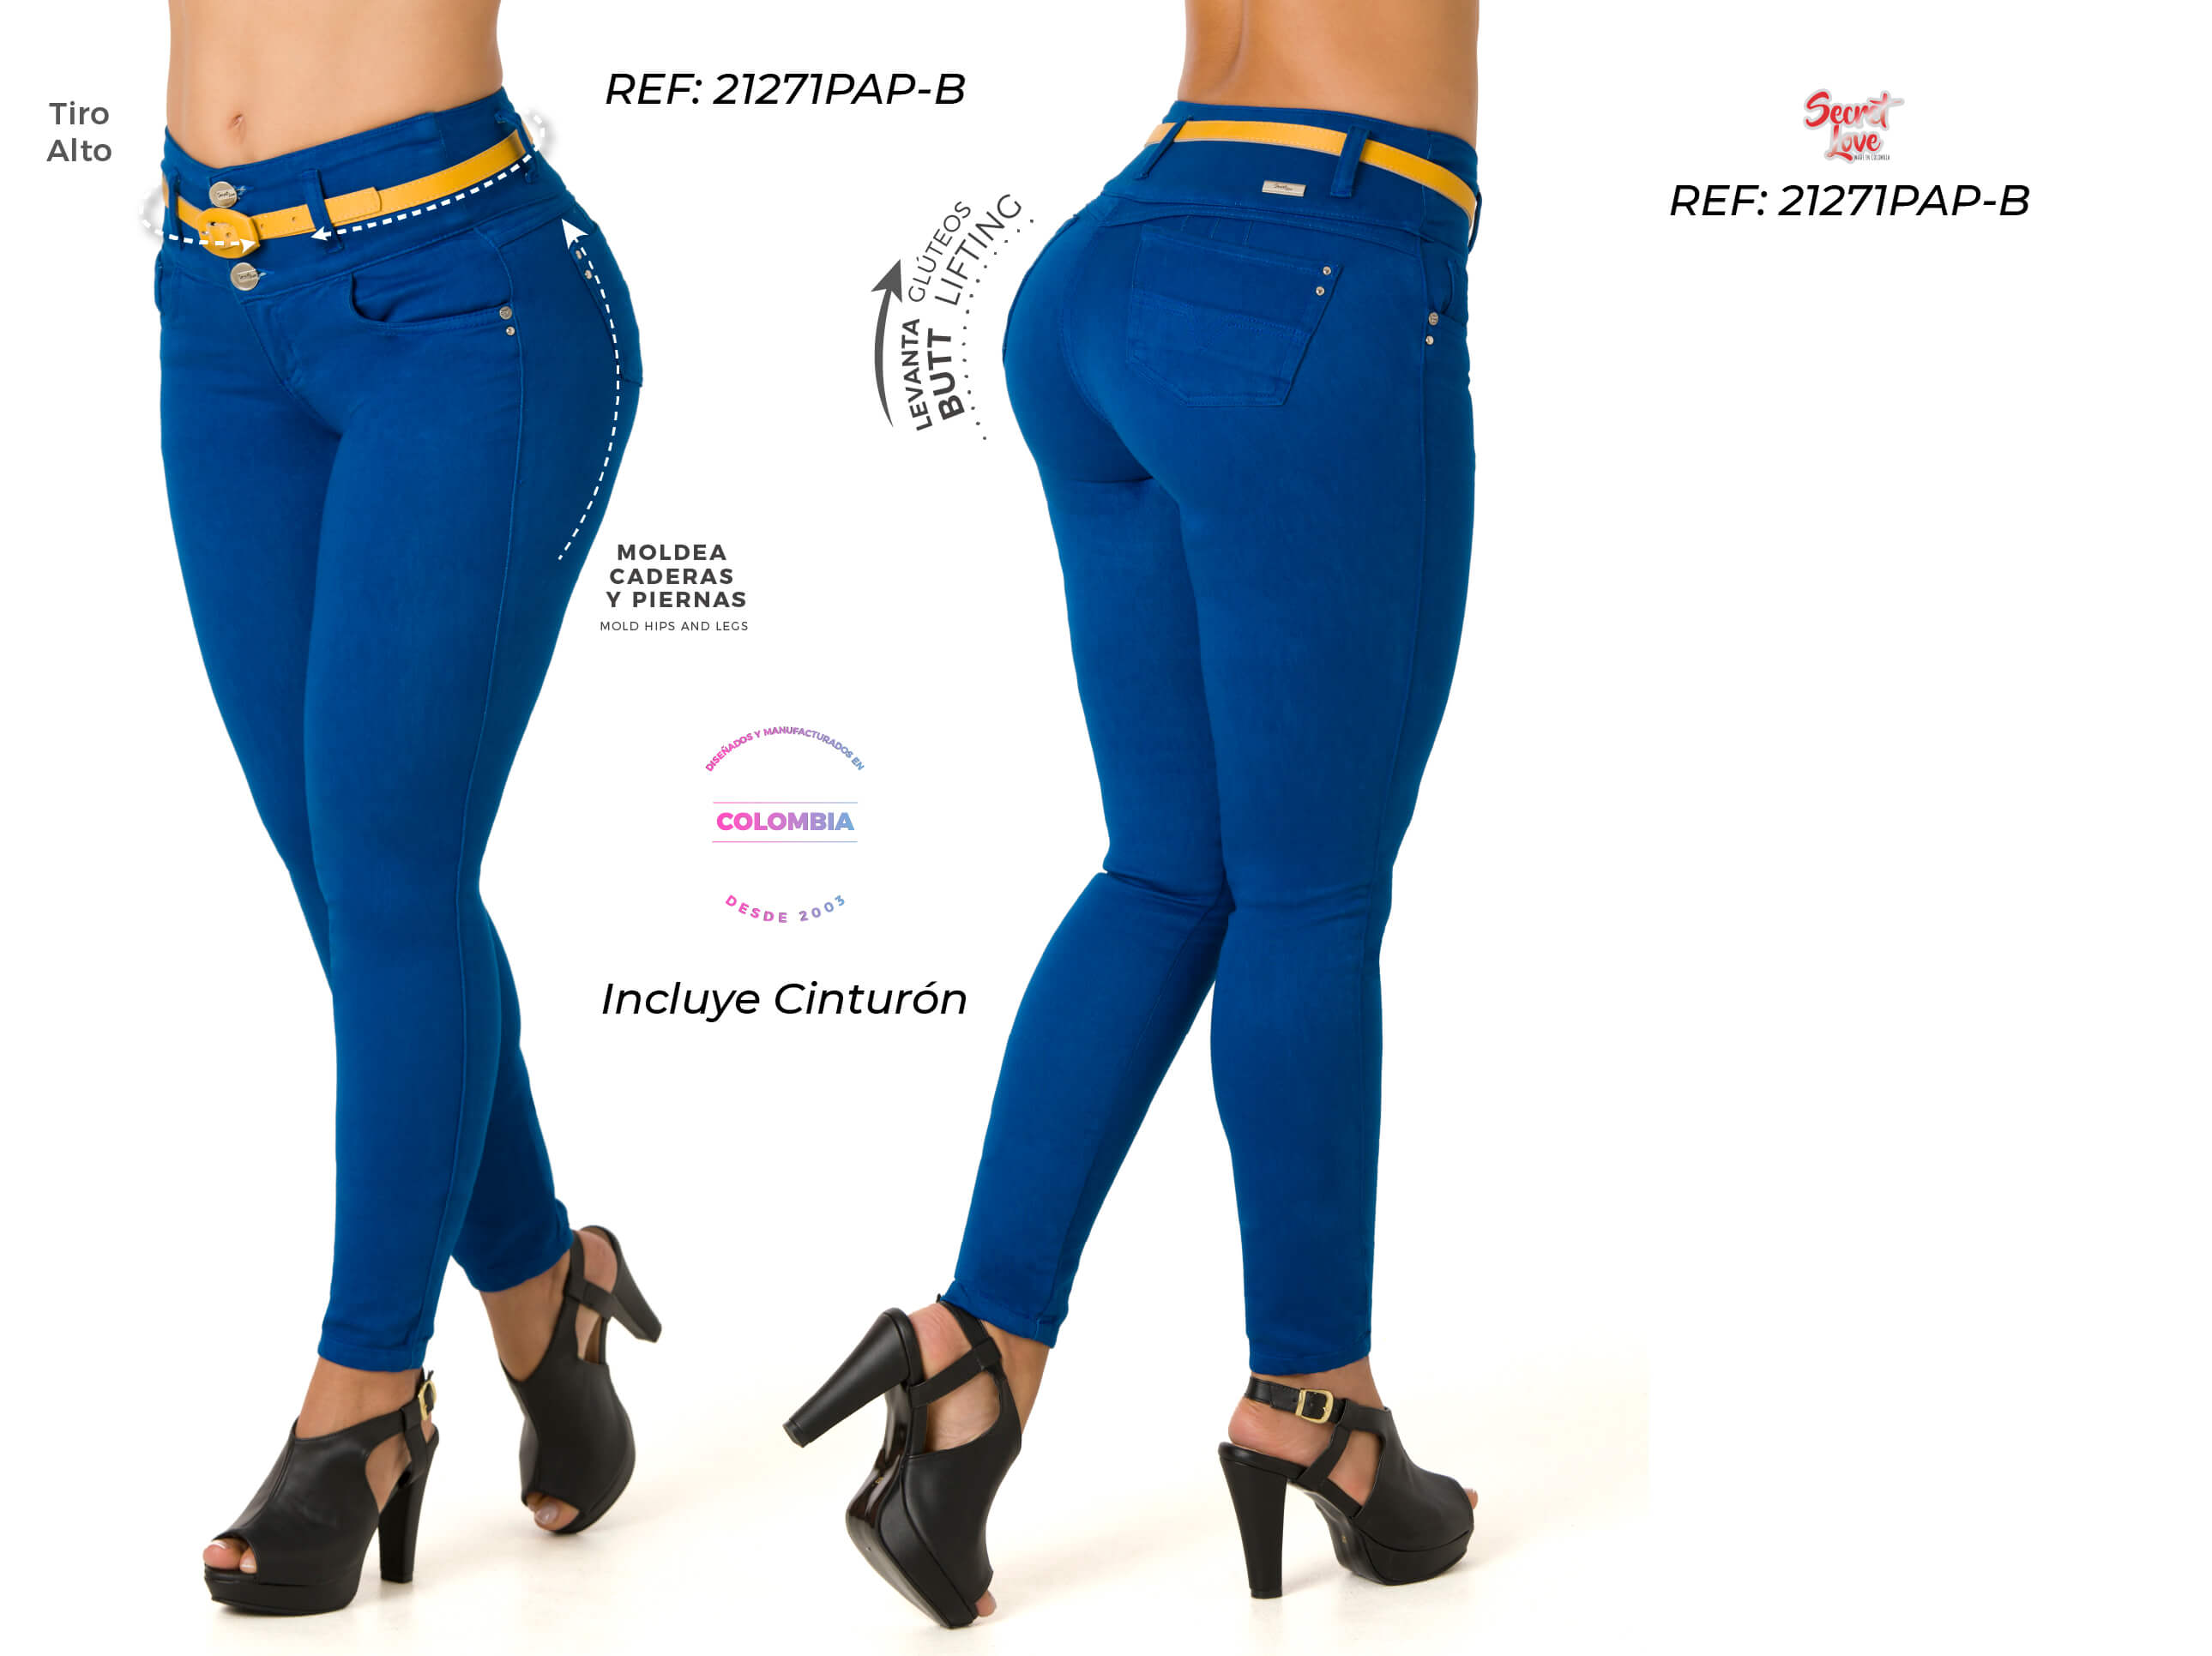 Colombian butt lifter jeans high waist – Ska Studio Usa